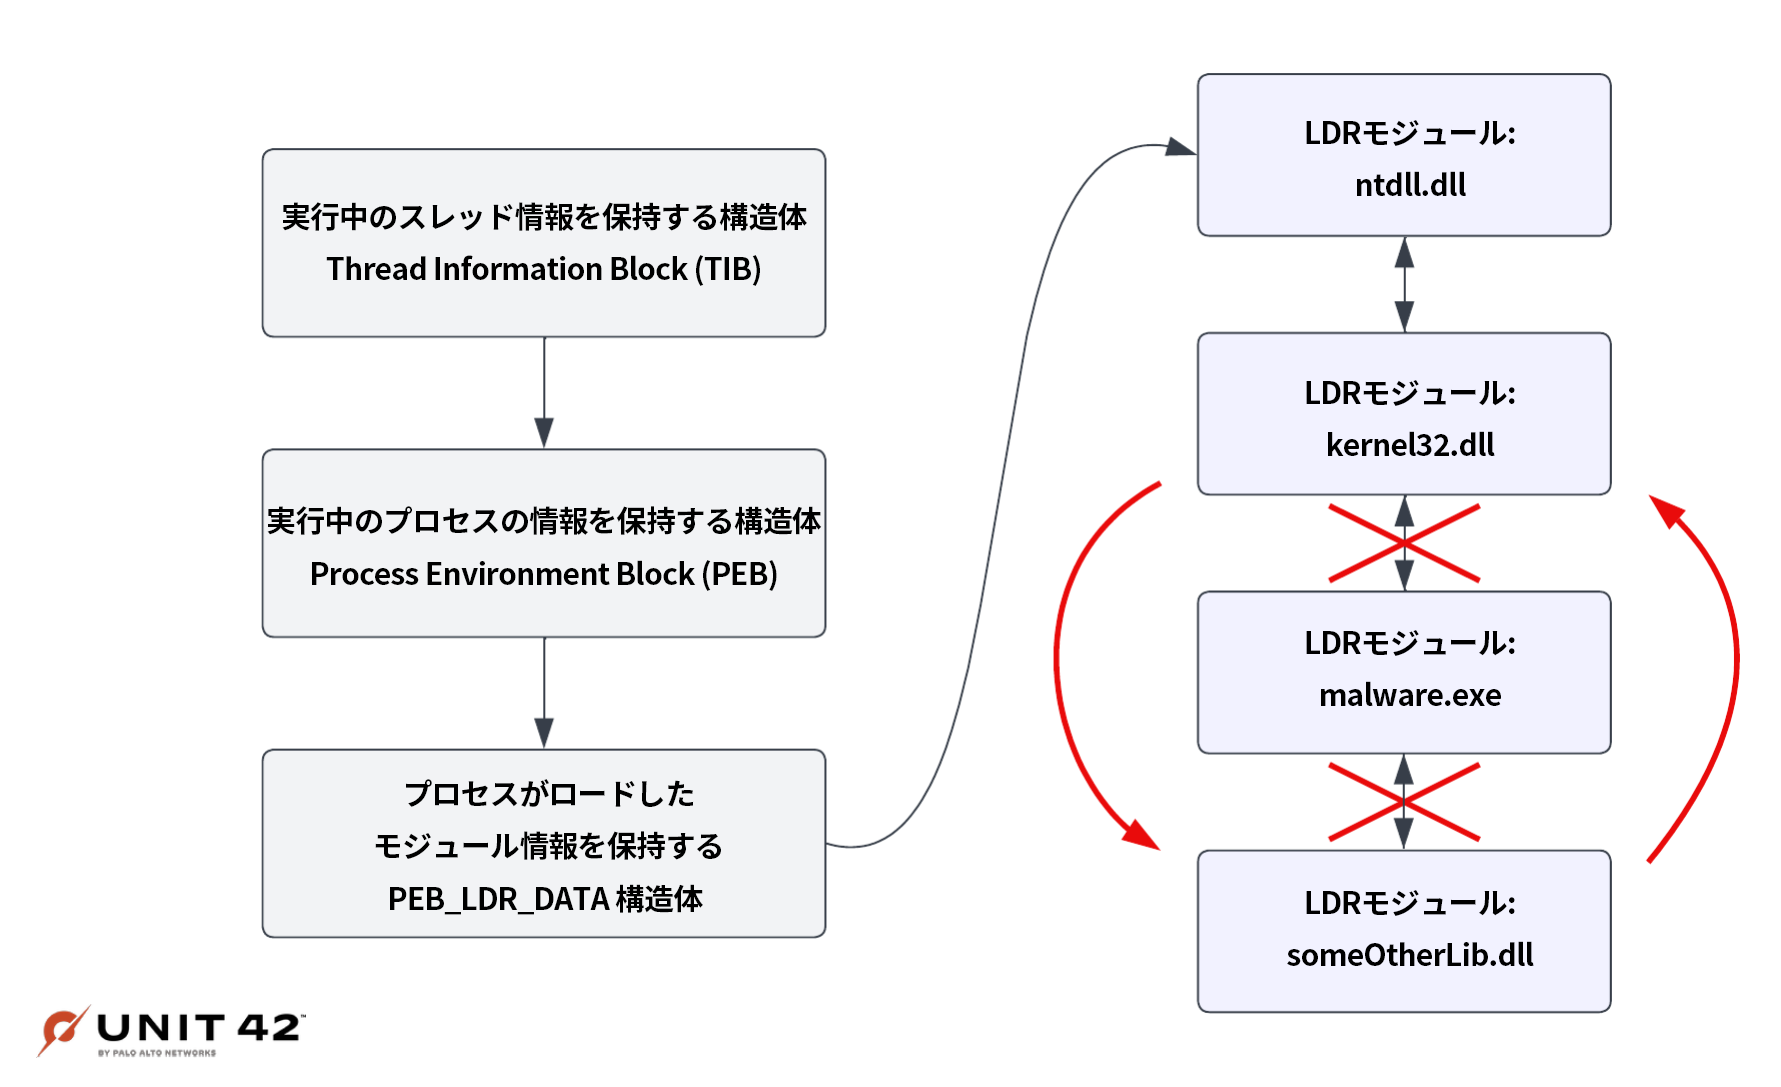 この画像は左の3つのフィールド (実行中のスレッド情報を保持する構造体Thread Information Block (TIB)、実行中のプロセスの情報を保持する構造体Process Environment Block (PEB)、対象プロセス用にロードされたモジュールの情報を保持するPEB_LDR_DATA構造体) へと進むようすを表している。矢印が1本伸びておりPEB_LDR_DATA構造体からLDRモジュール群への進行を示している。LDR_MODULEのntdll.dllがLDR_MODULEのkernel32.dllへと進み、マルウェアからkernel32.dllをアンフックして、someOtherLib.dllに置き換えている。